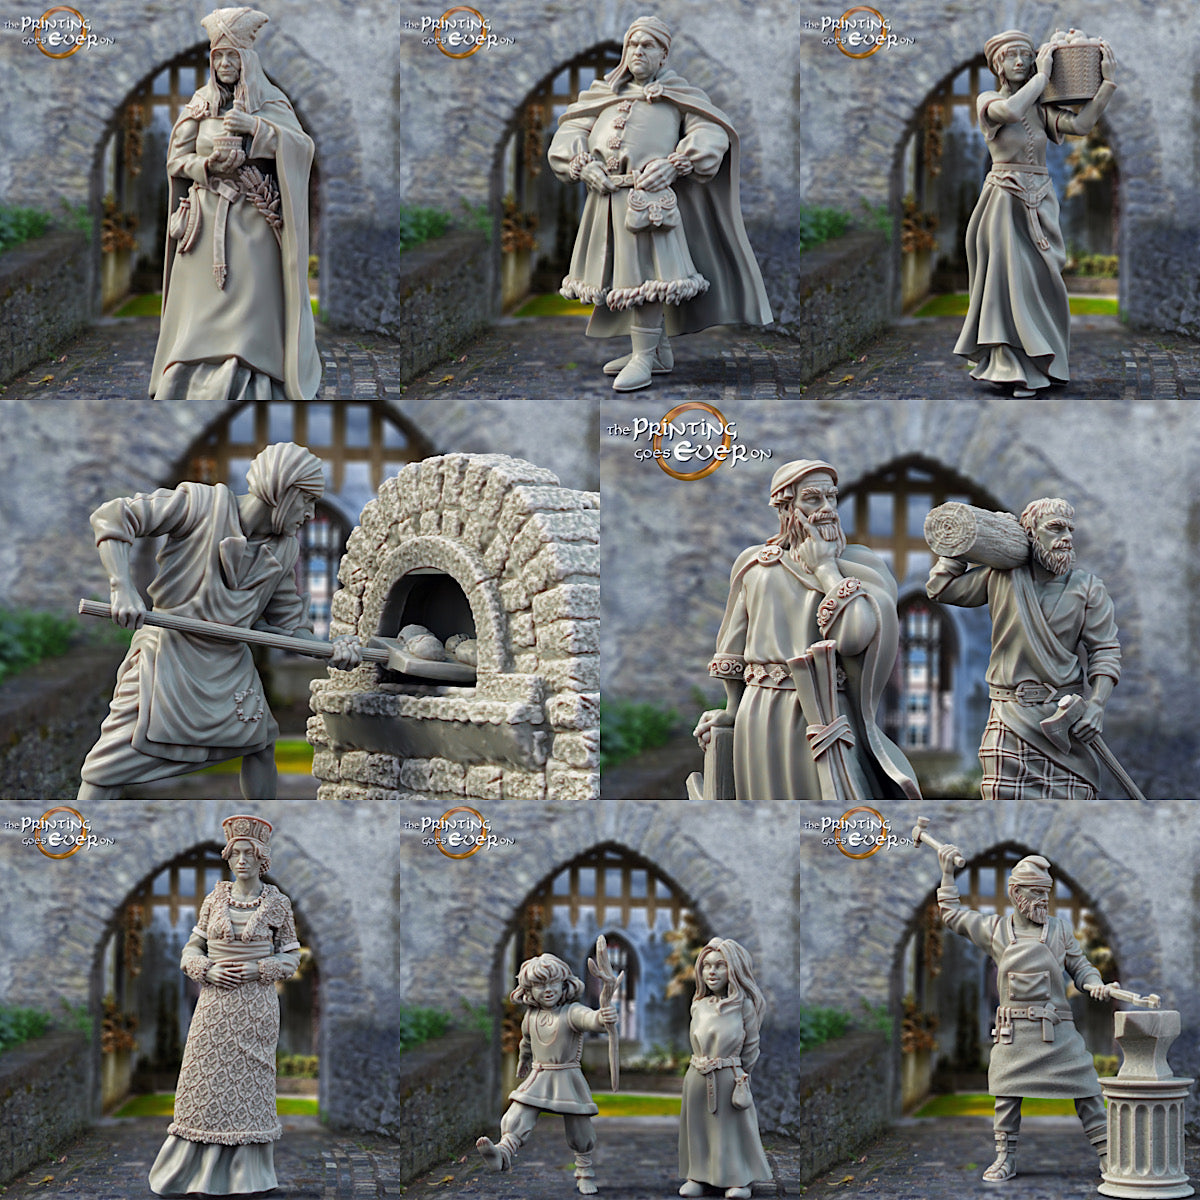 Kategorie-Bild: Miniatur-Figuren Menschen: Historische und mittelalterliche Figuren für Diorama und Modellbau